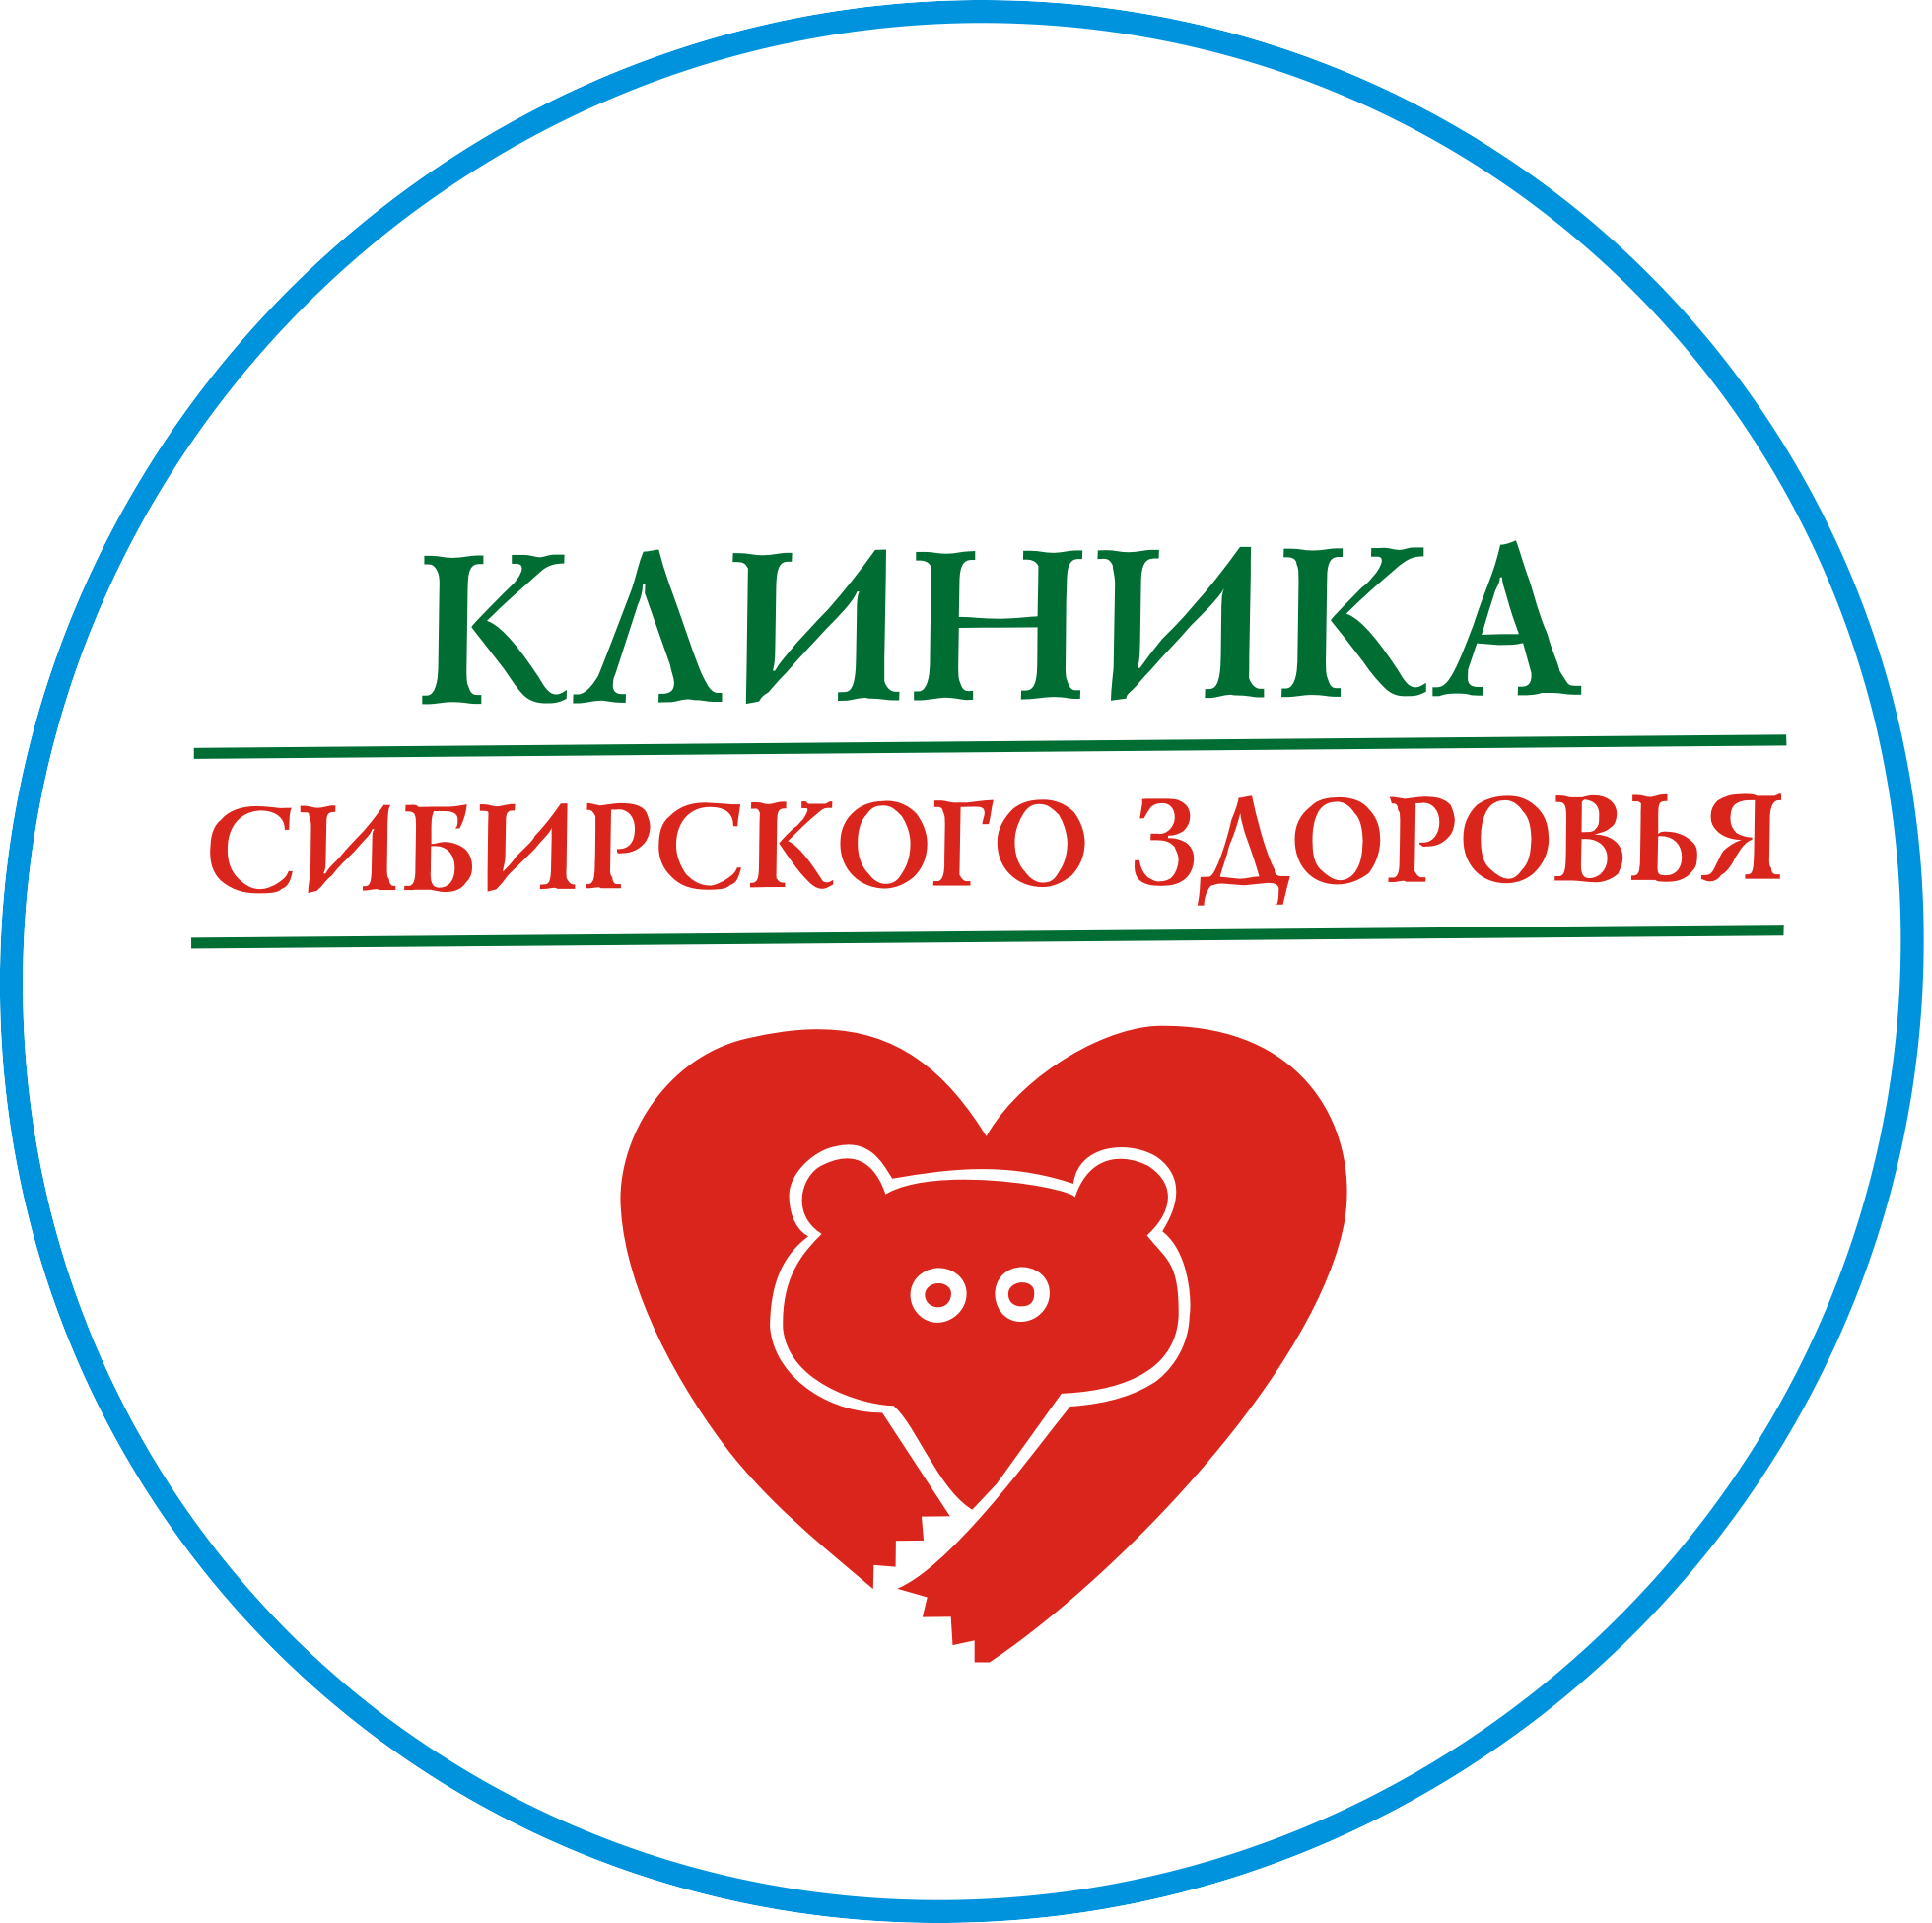 Сибирское здоровье иркутск телефон клиника